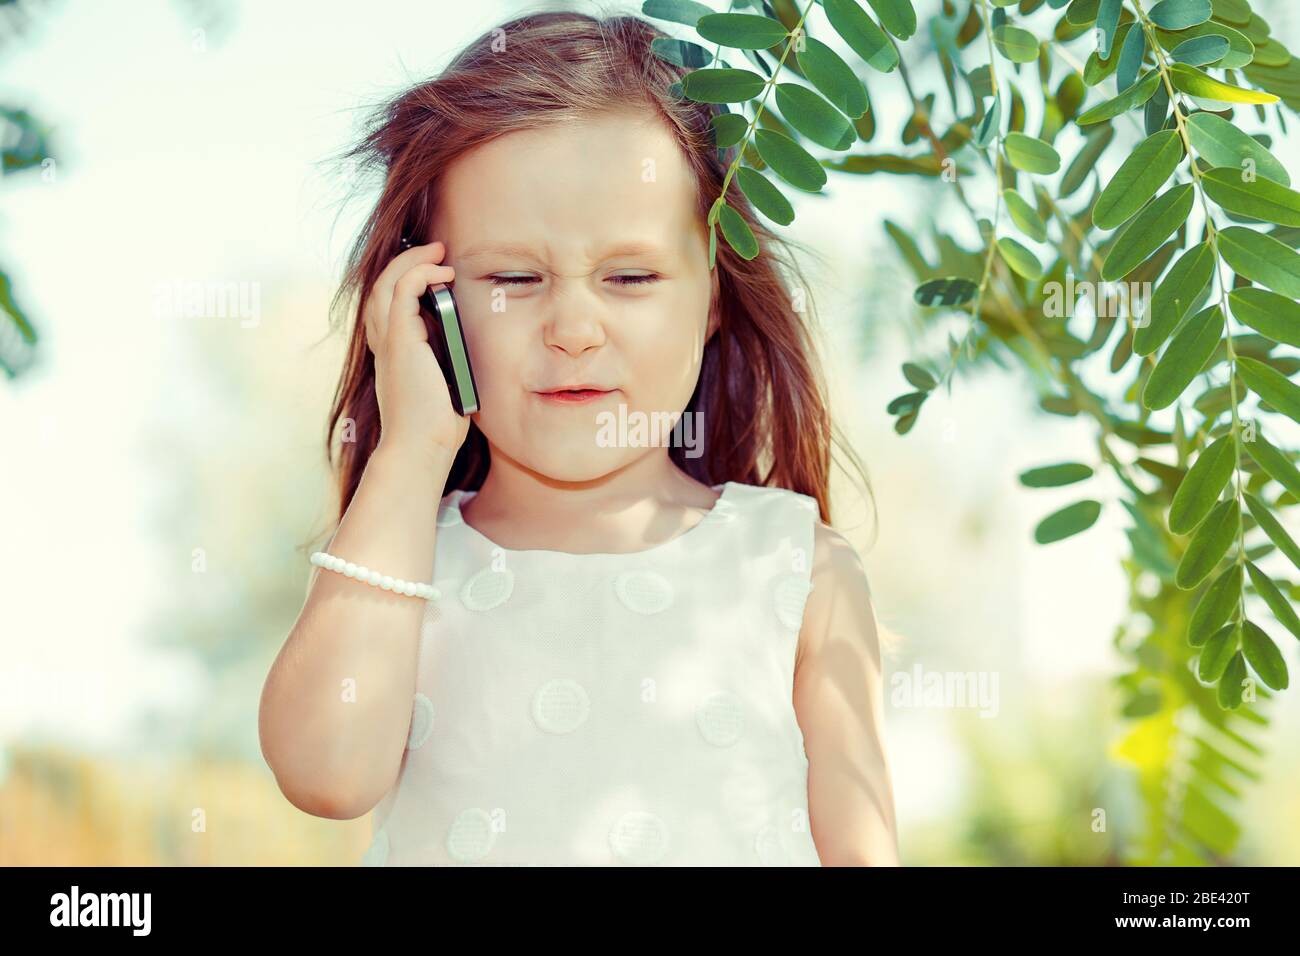 Kids & Technology Konzept. Nahaufnahme Porträt Kopfschuss der schönen aufgeregt unglücklich, ernst kleines Mädchen reden auf mobilen grünen Park im Freien Hintergrund. Stockfoto